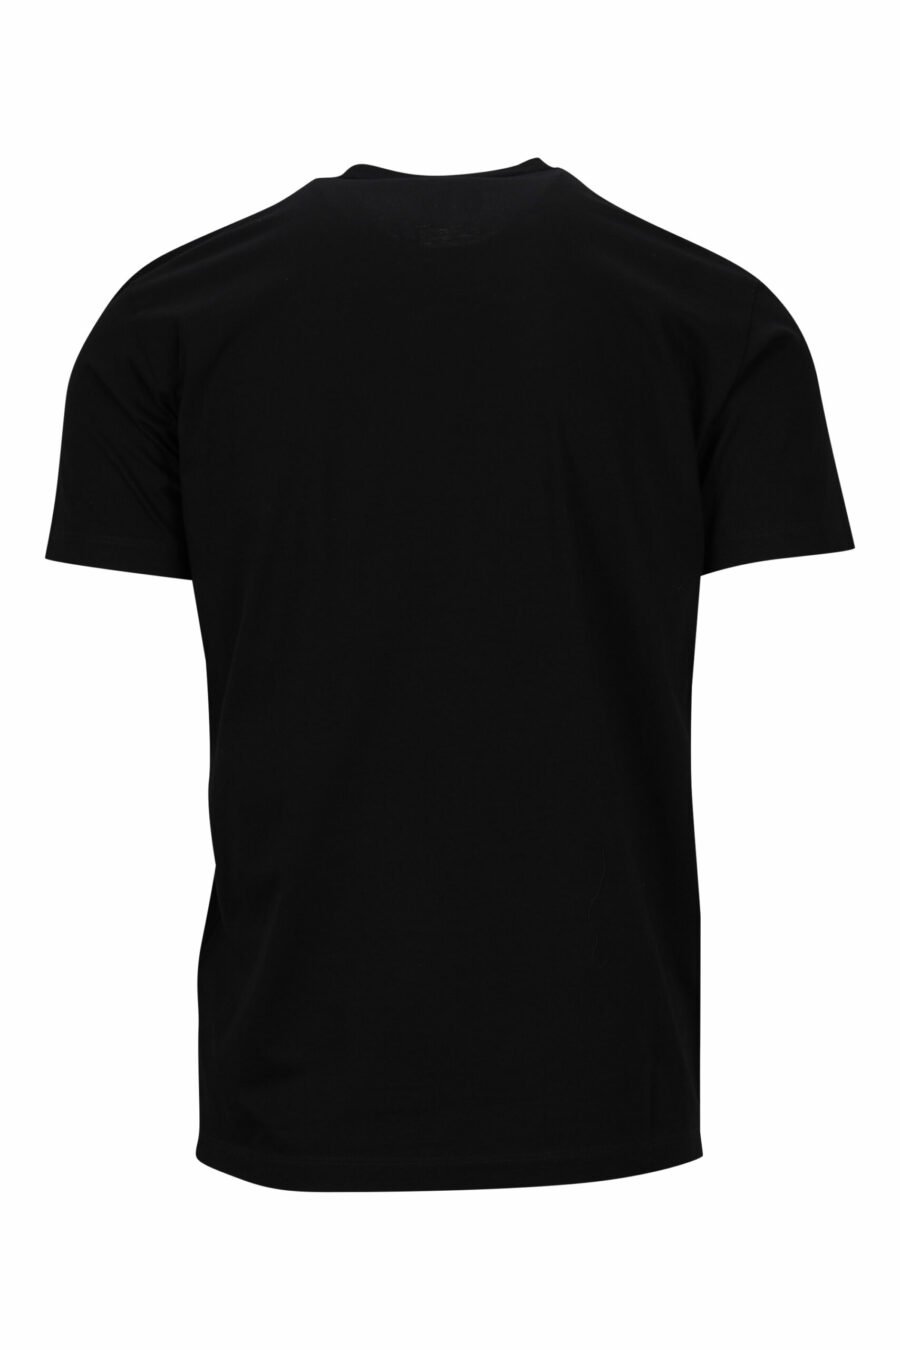 T-shirt noir avec des gribouillis maxilogo "icon" - 8054148362898 1 scaled